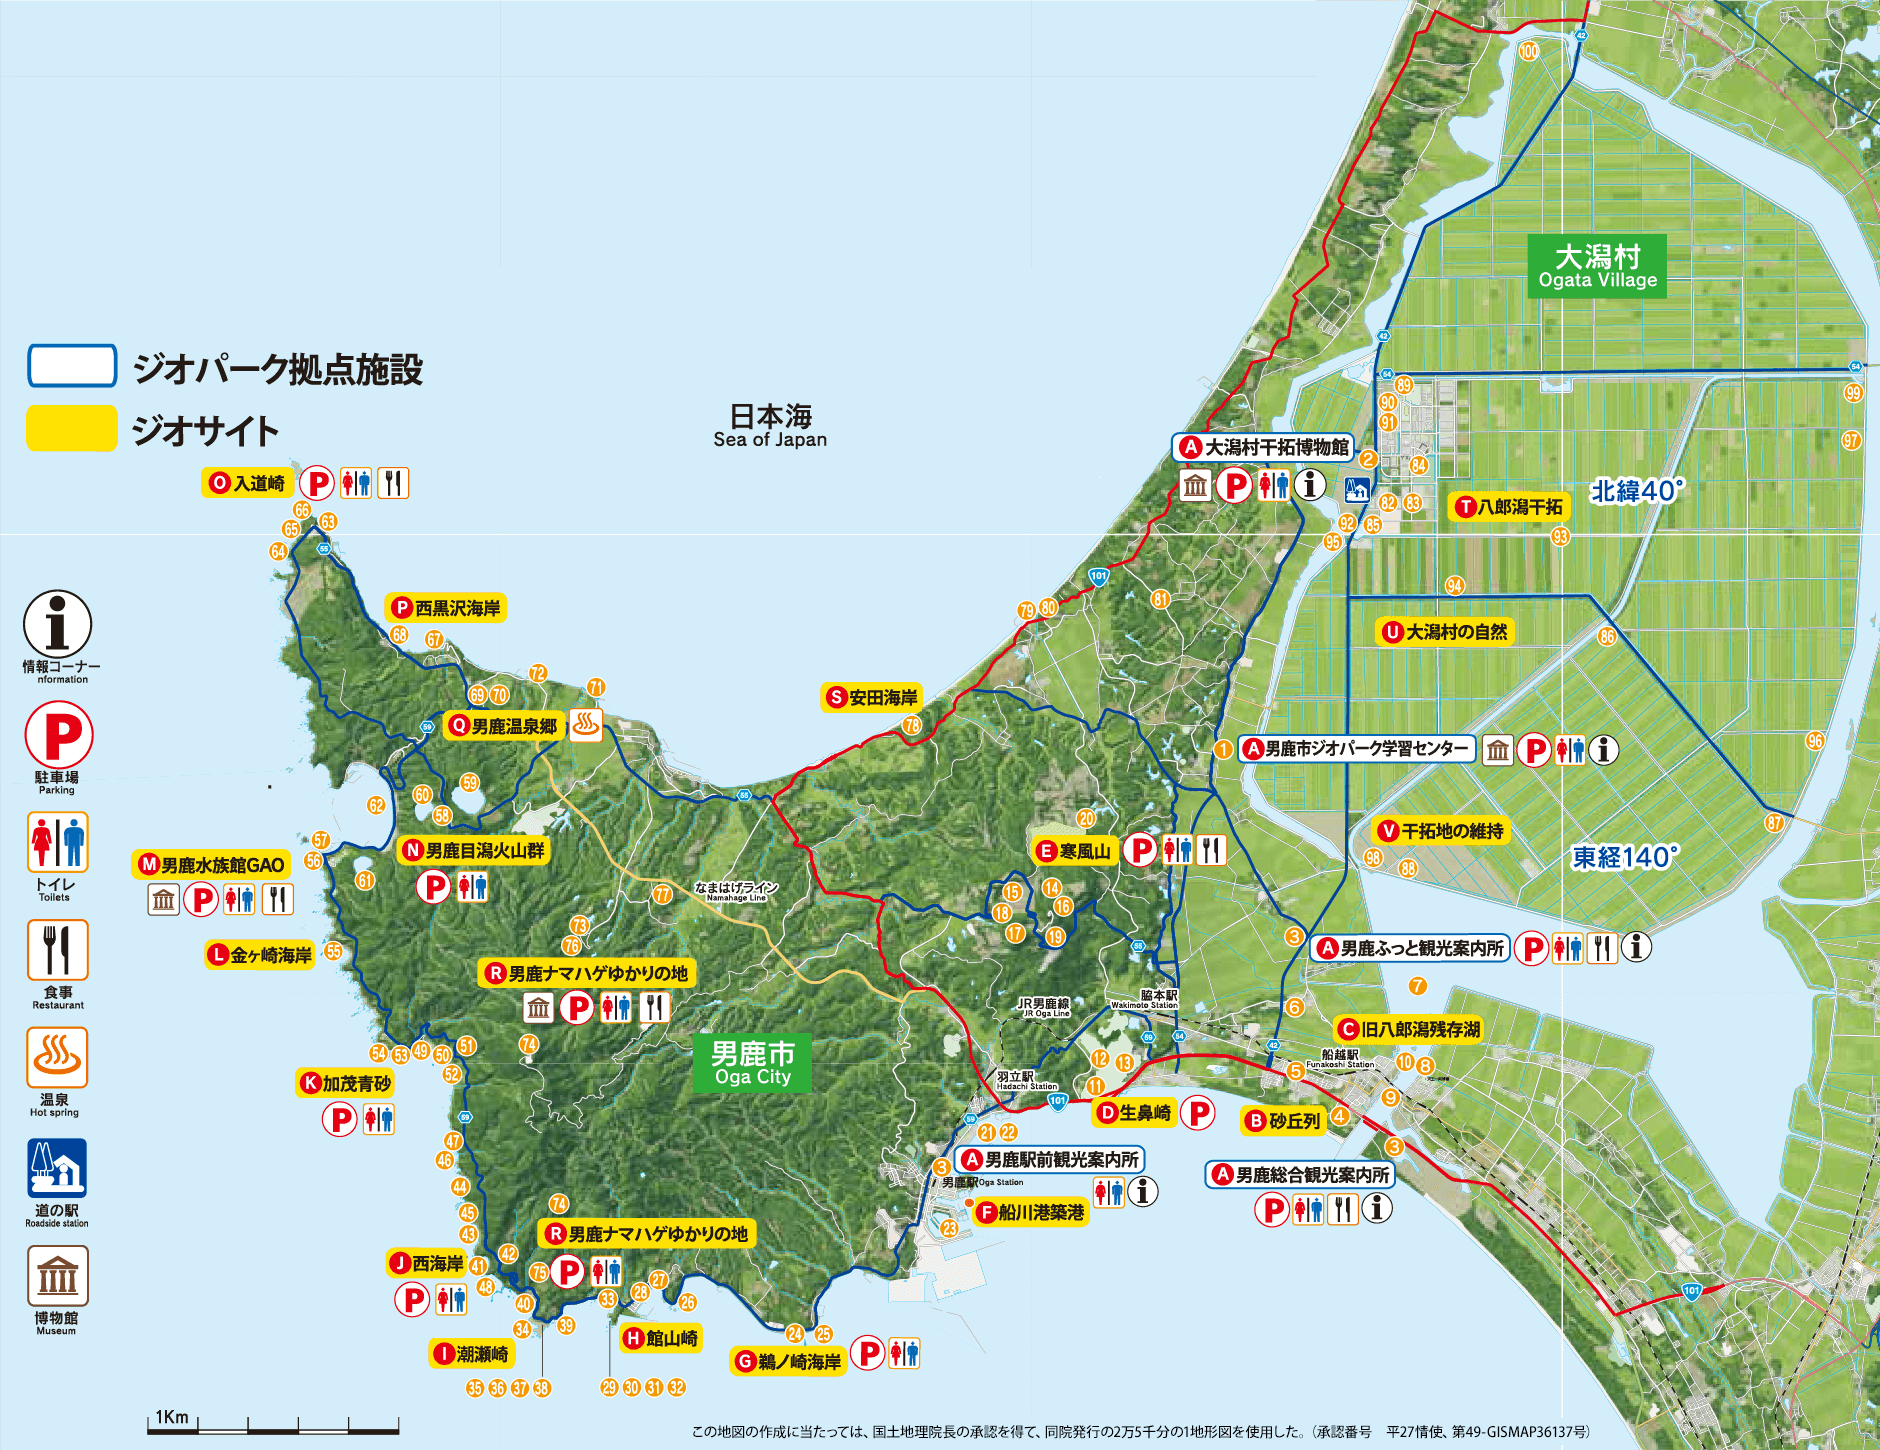 男鹿半島・大潟ジオパーク 拠点施設とジオサイトのマップ